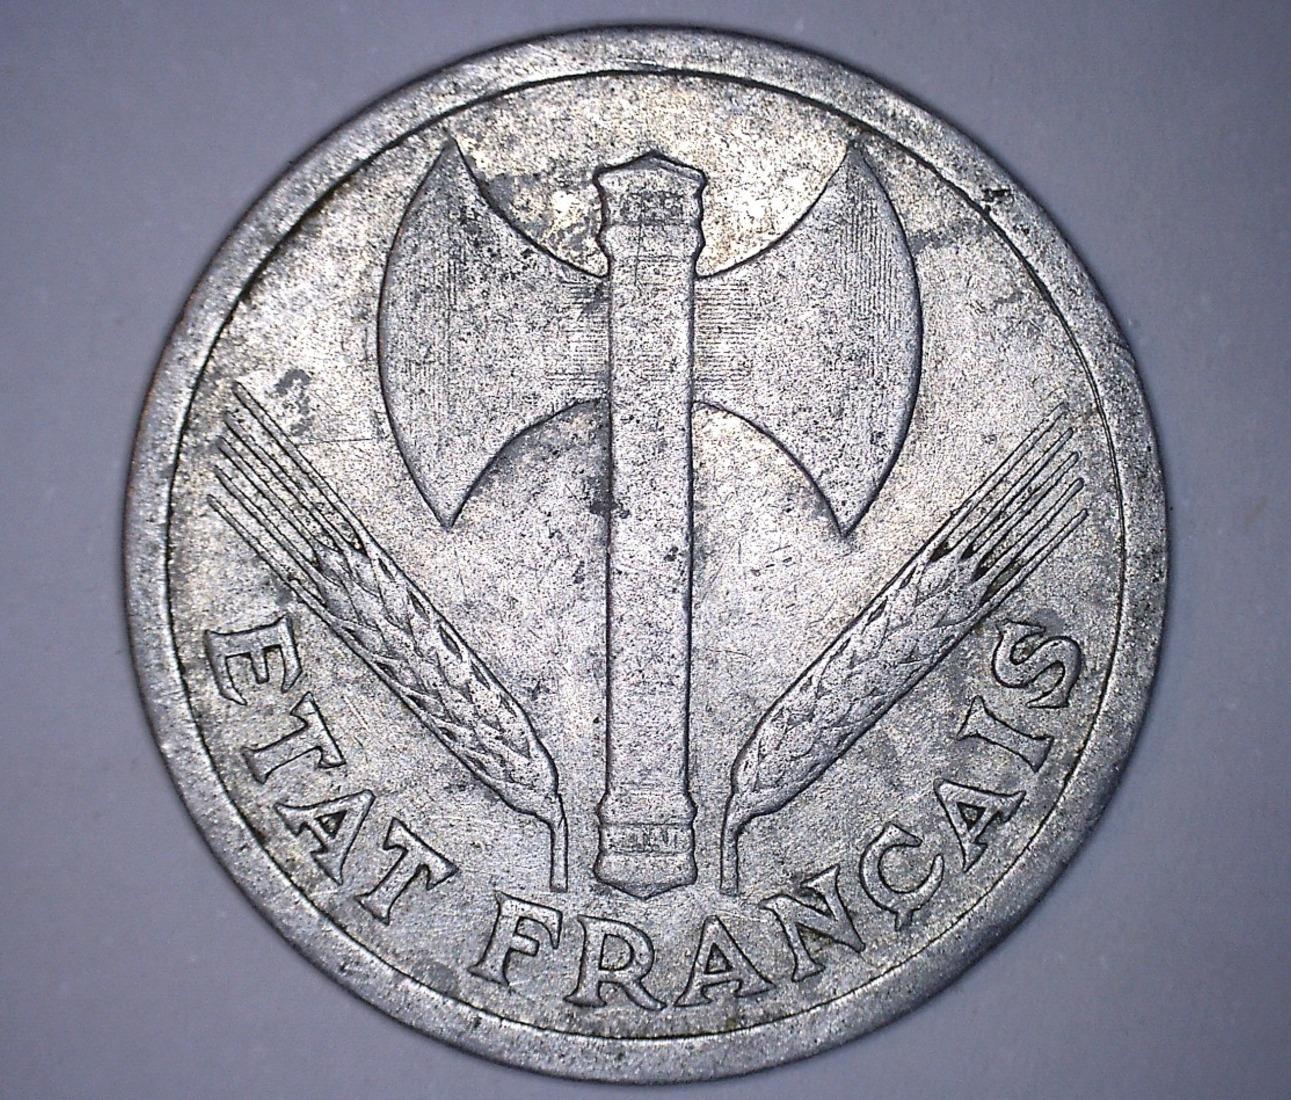 troc de troc rarissime 2 francs bazor francisque 1944 sans signature lb image 0